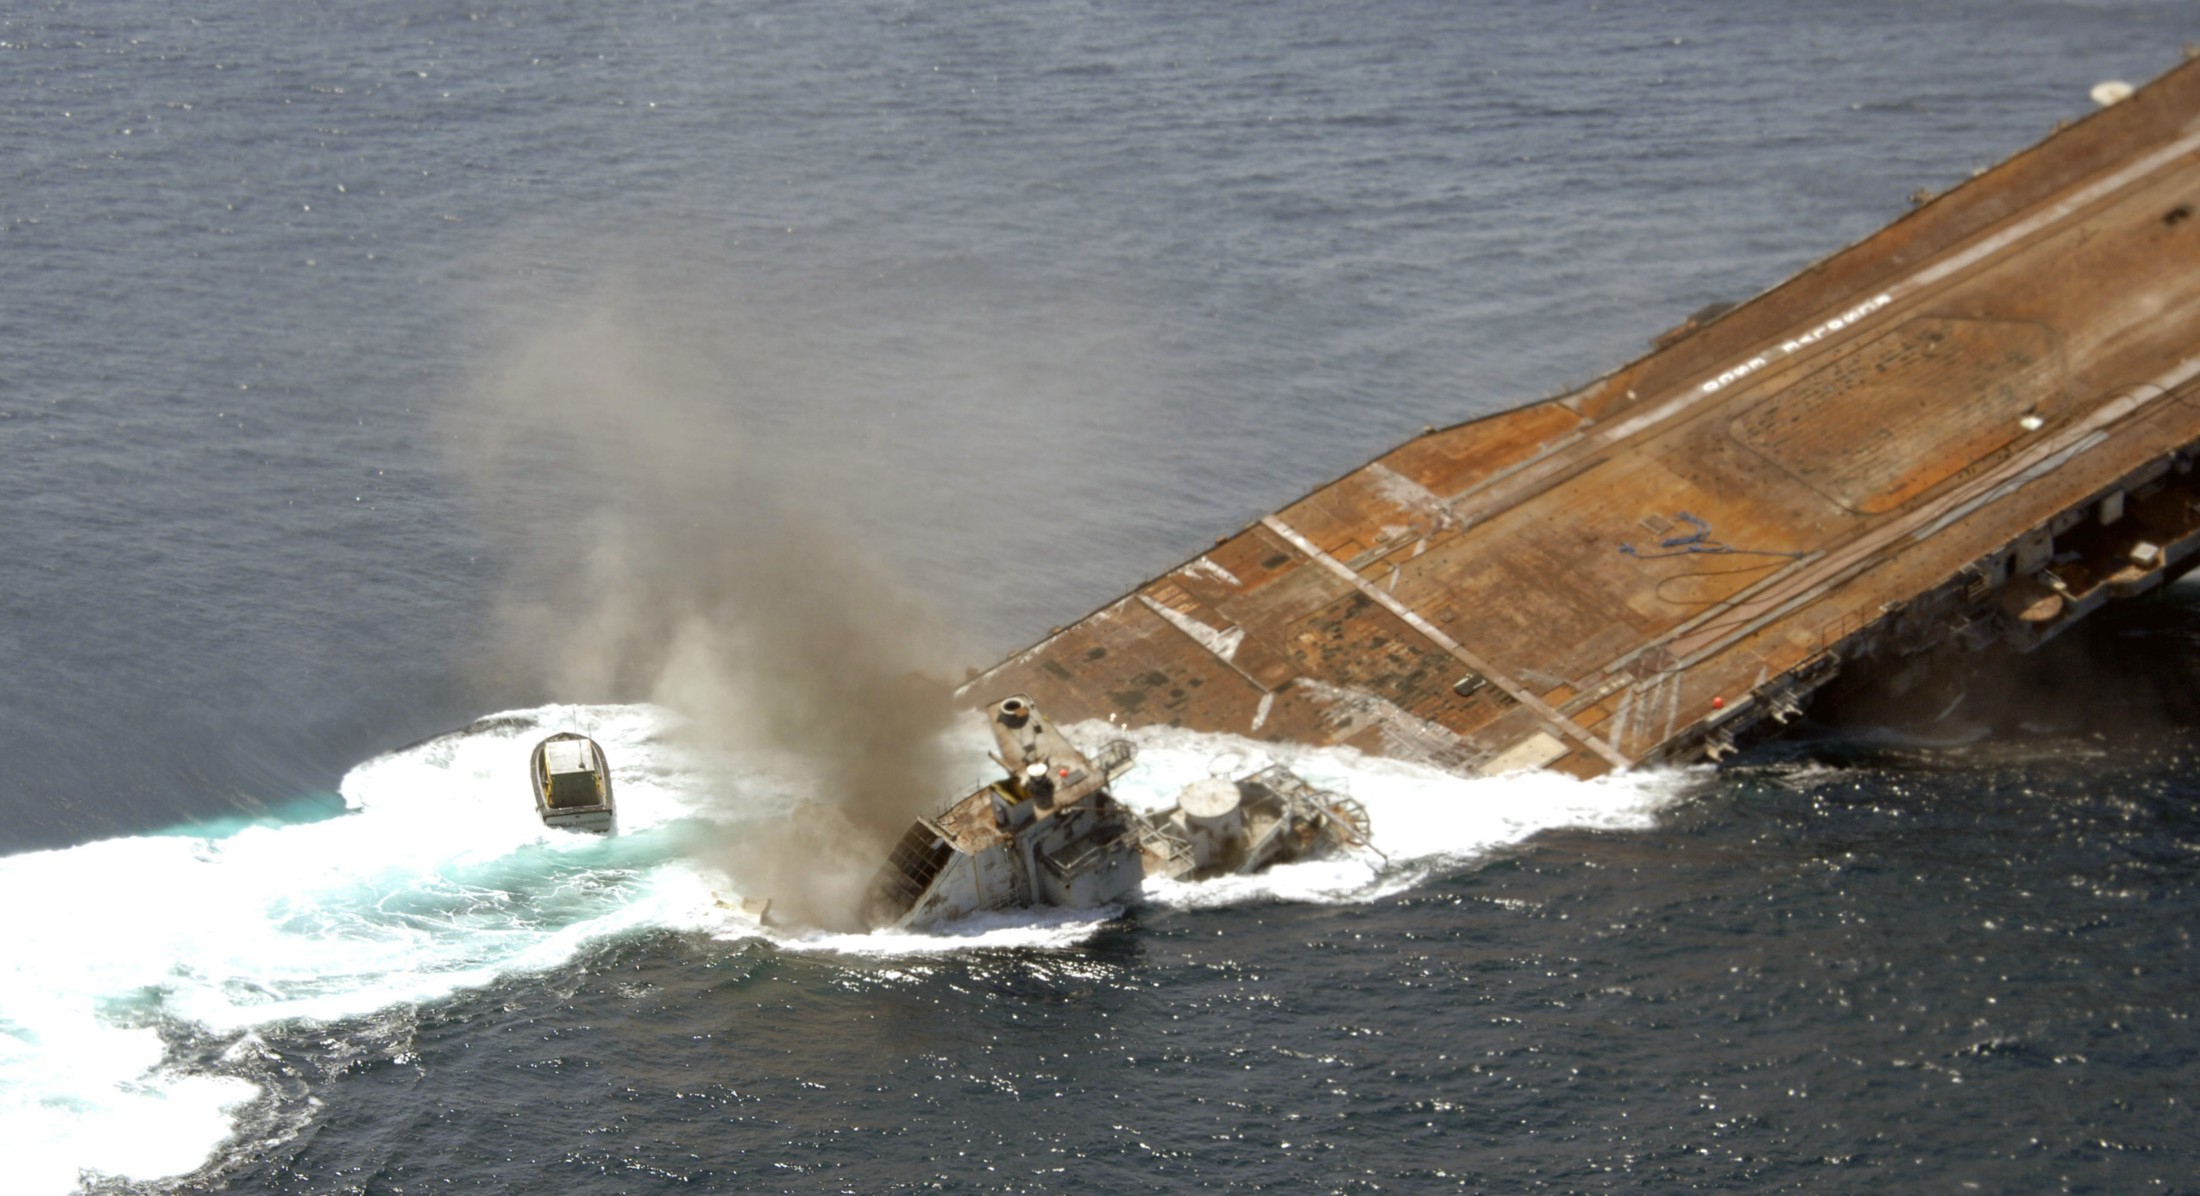 cv-34 uss oriskany essex class aircraft carrier us navy sinking artificial reef off florida 109